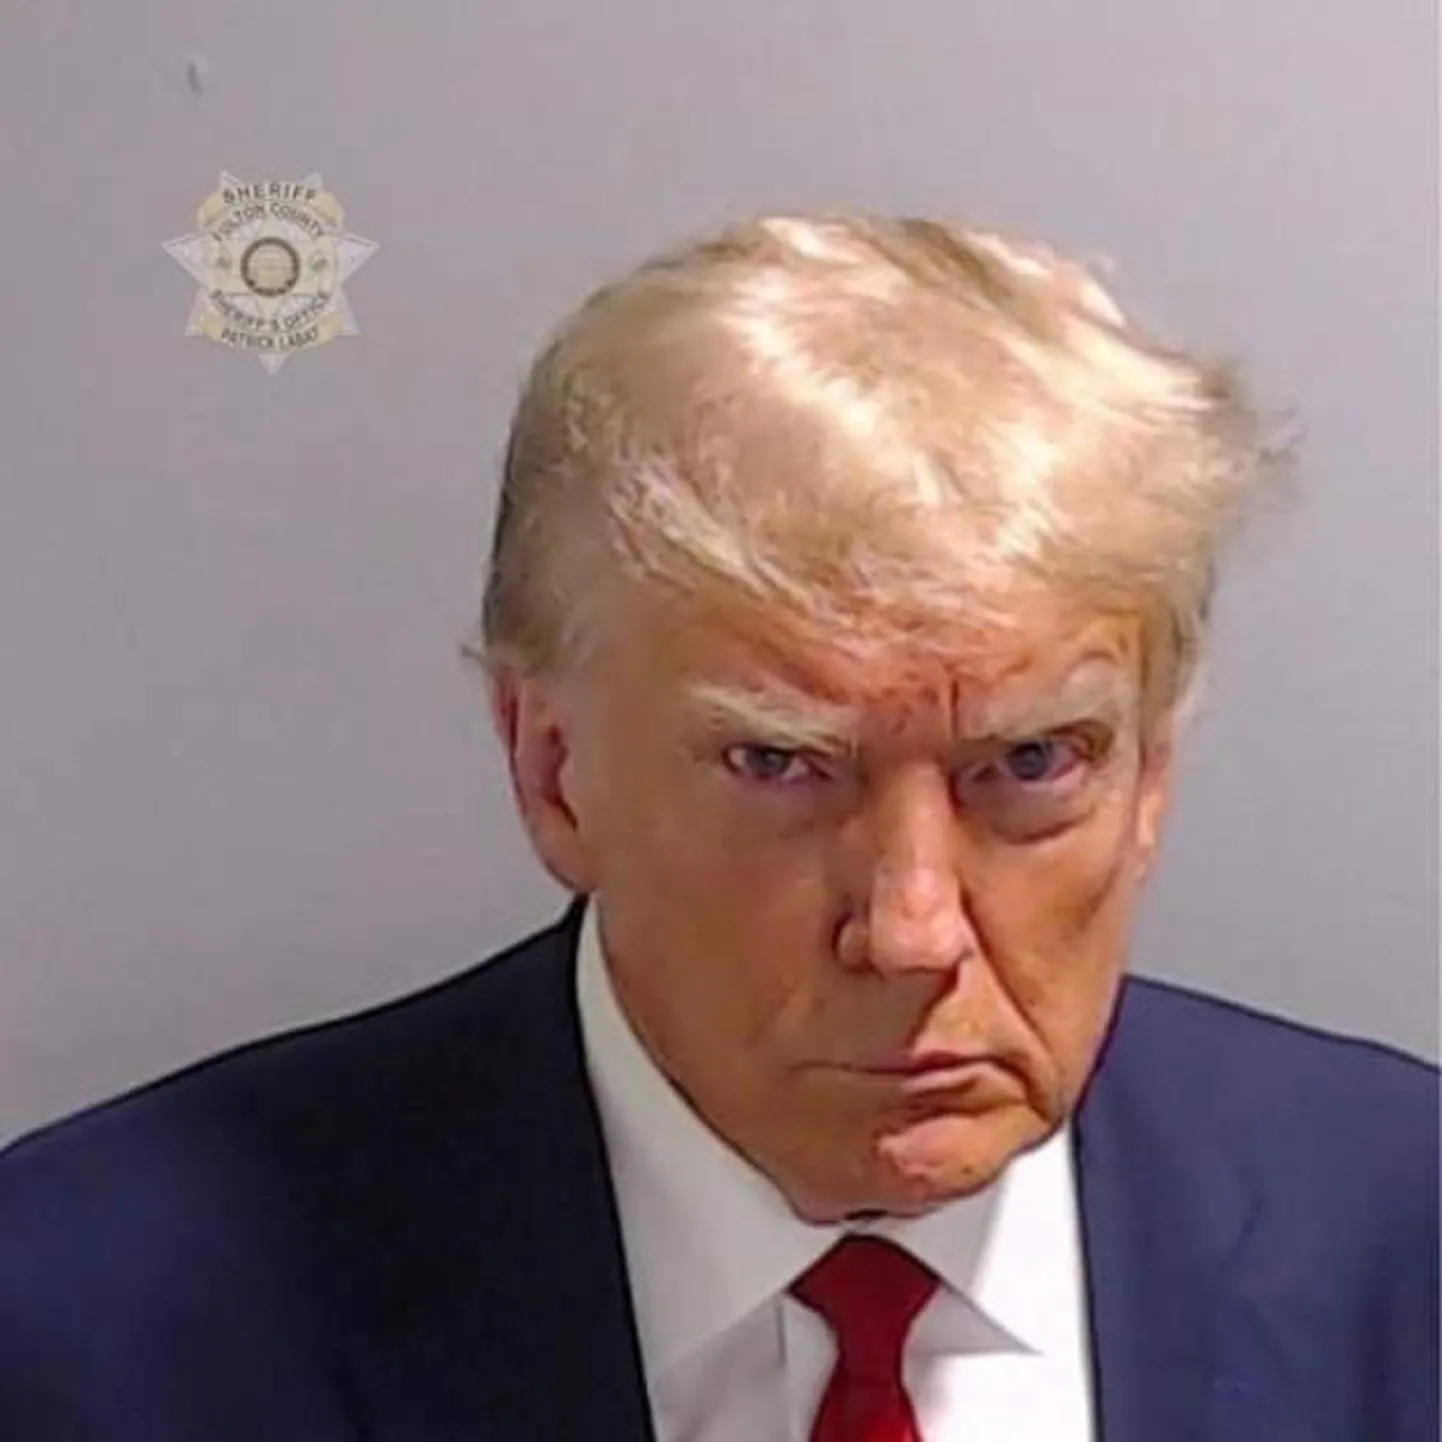 Это первое в истории официальное тюремное фото президента США